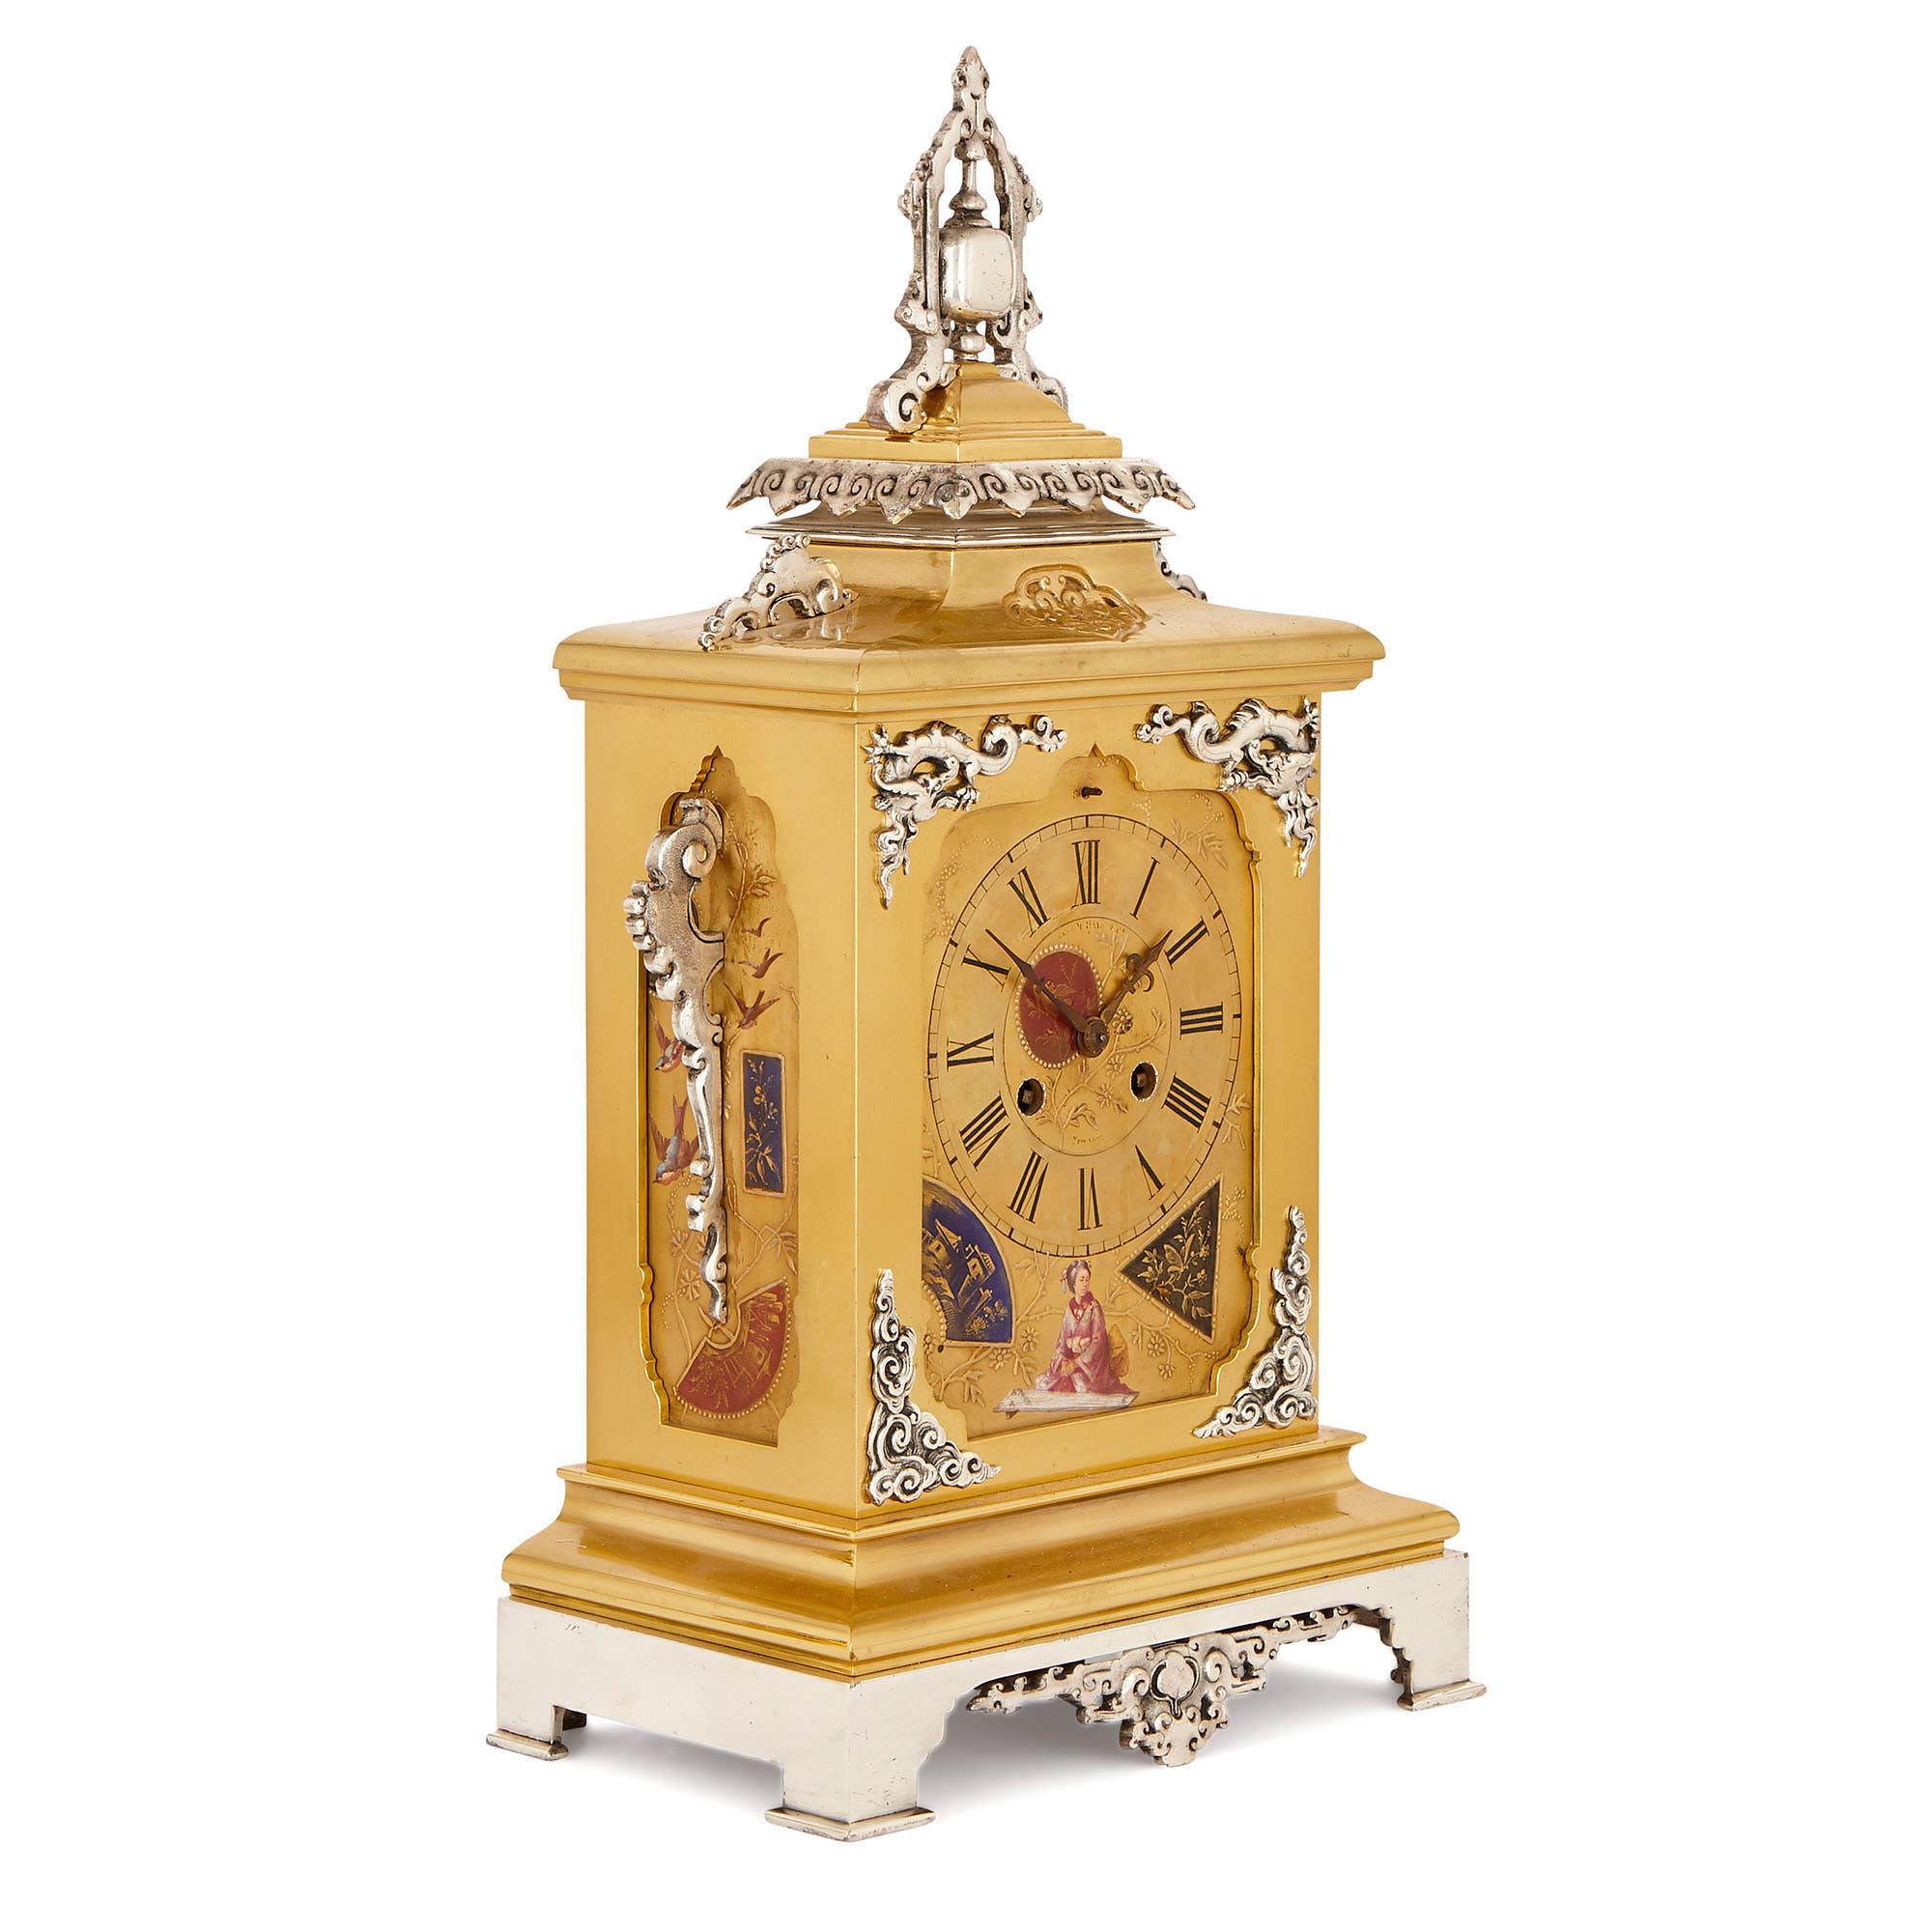 Dieses Uhrenset im japanischen Stil wurde um 1880 in Frankreich hergestellt. Das Set besteht aus einer zentralen Uhr, die von zwei Vasen begleitet wird. 

Die zentrale Uhr hat einen rechteckigen Korpus aus vergoldetem Messing mit einer